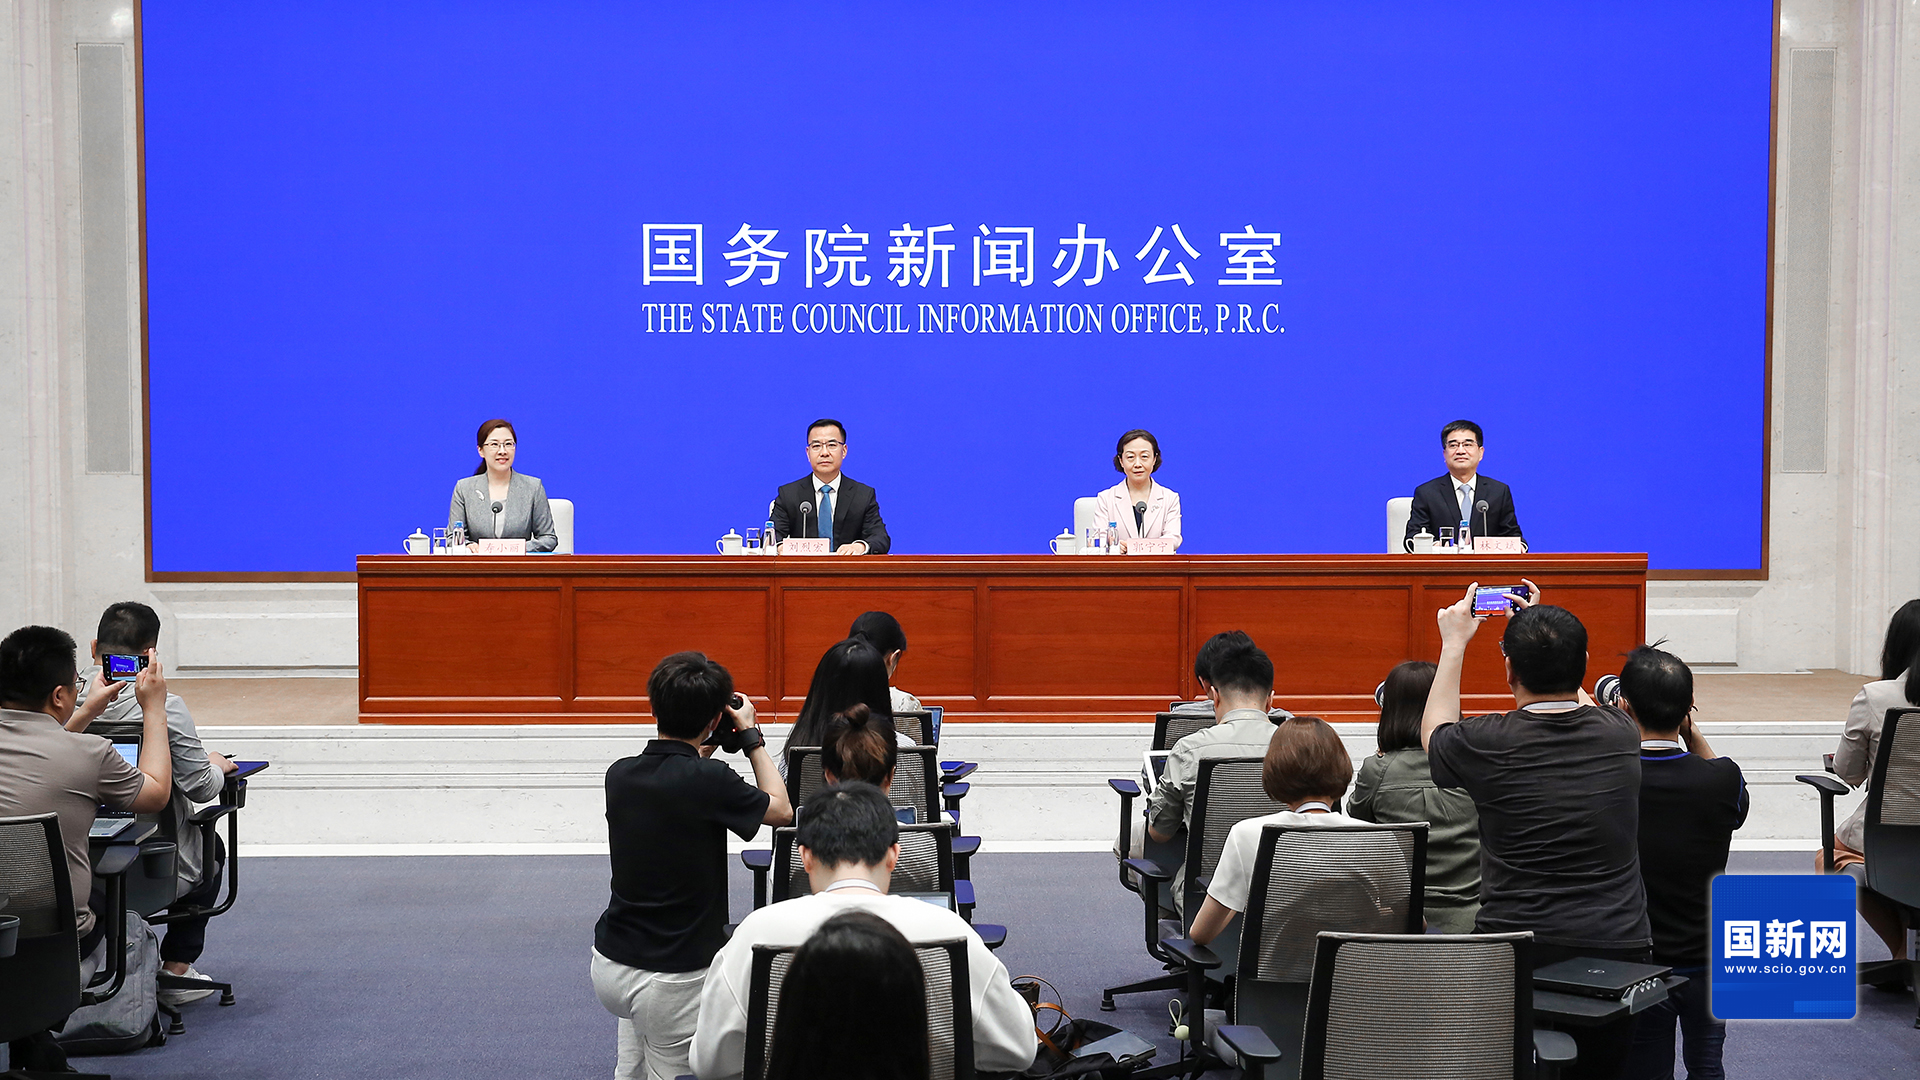 国新办举行新闻发布会 介绍第七届数字中国建设峰会有关情况